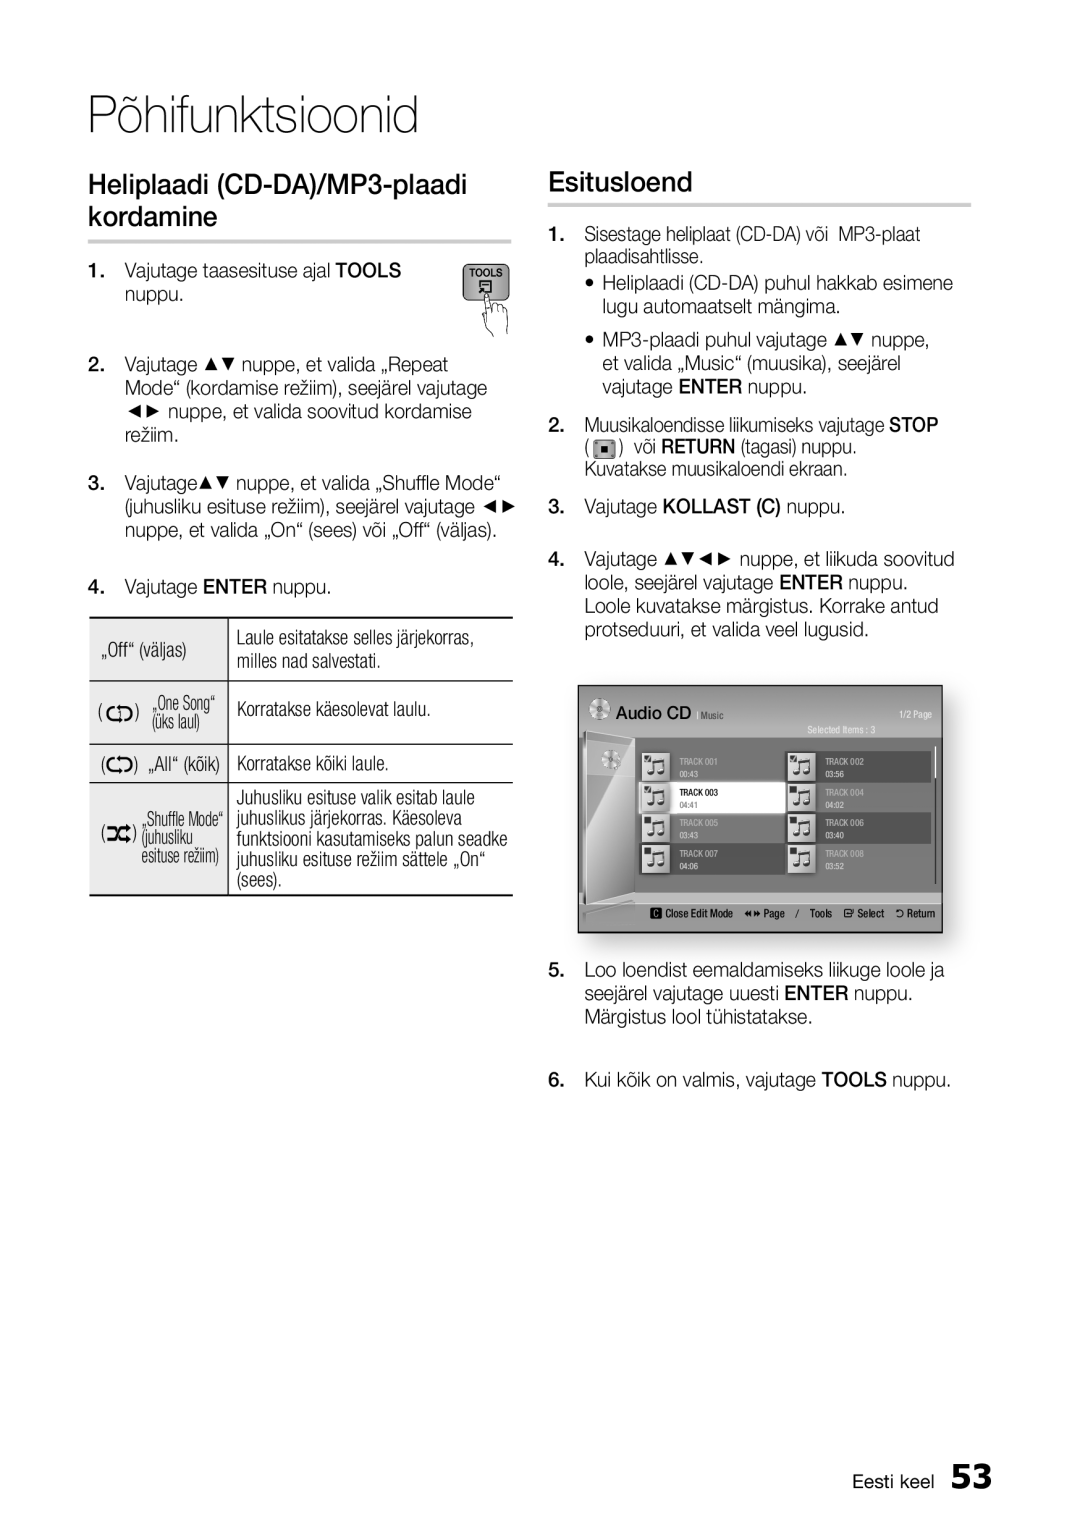 Samsung BD-E6300/EN manual Heliplaadi CD-DA/MP3-plaadi kordamine, Esitusloend, Põhifunktsioonid, üks laul 